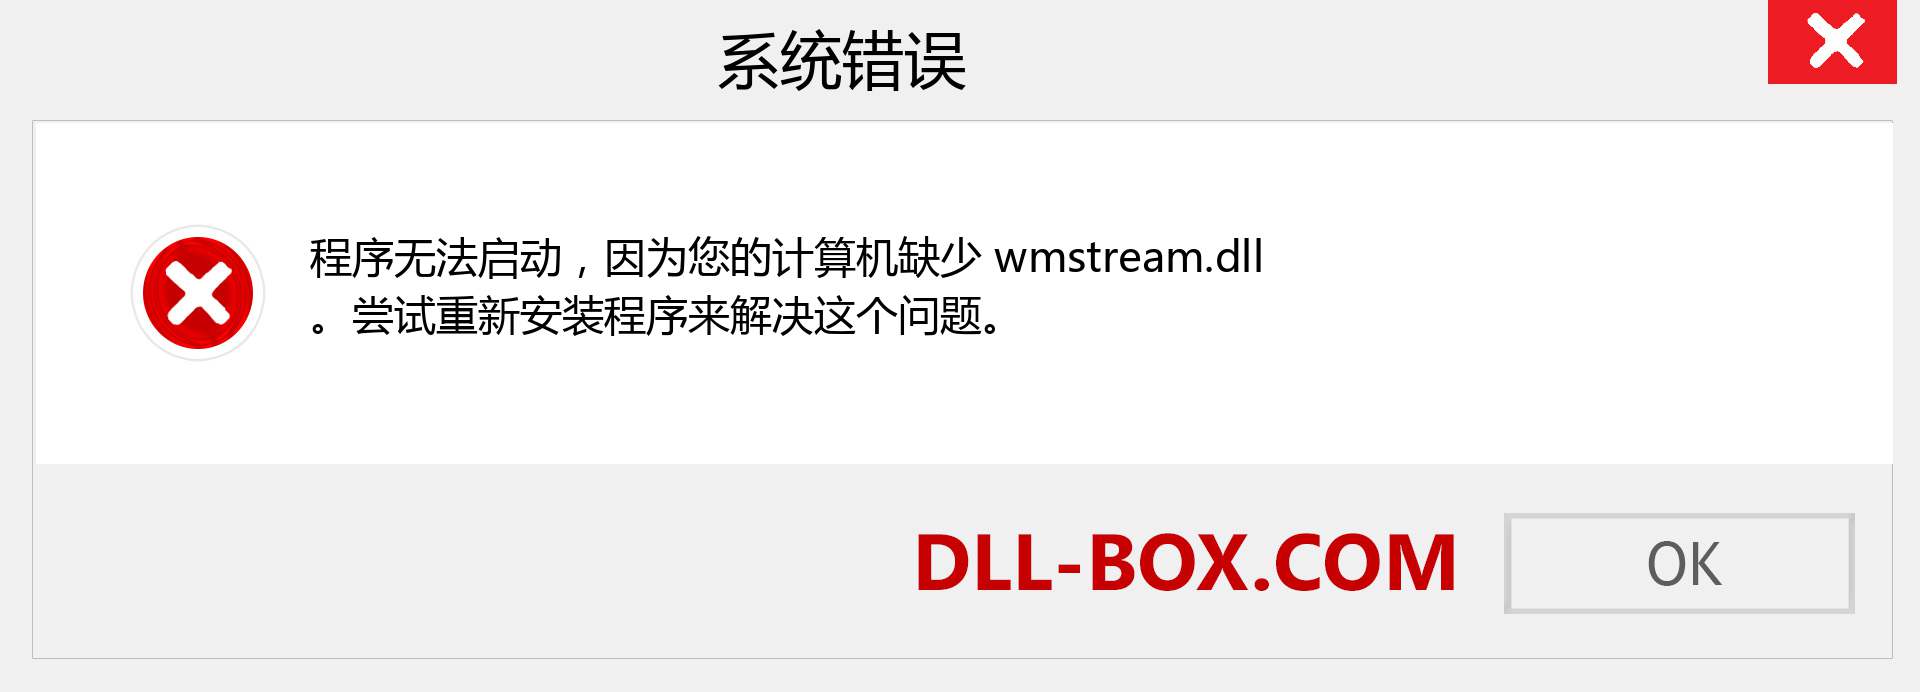 wmstream.dll 文件丢失？。 适用于 Windows 7、8、10 的下载 - 修复 Windows、照片、图像上的 wmstream dll 丢失错误